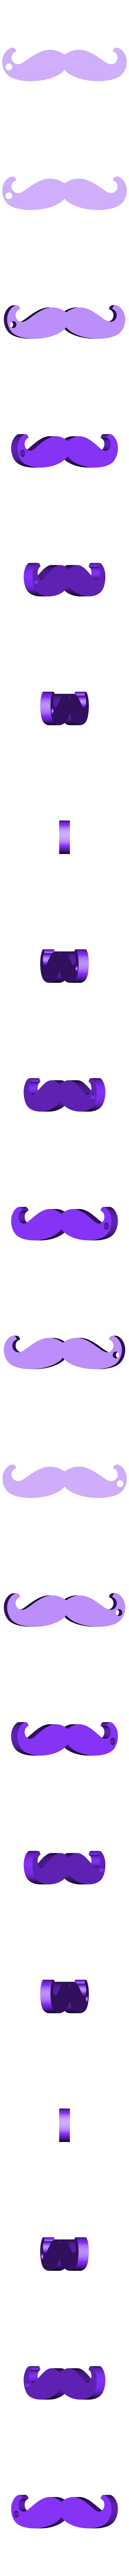 Mustache.STL Télécharger fichier STL gratuit Mustache opener • Objet à imprimer en 3D, BEEVERYCREATIVE